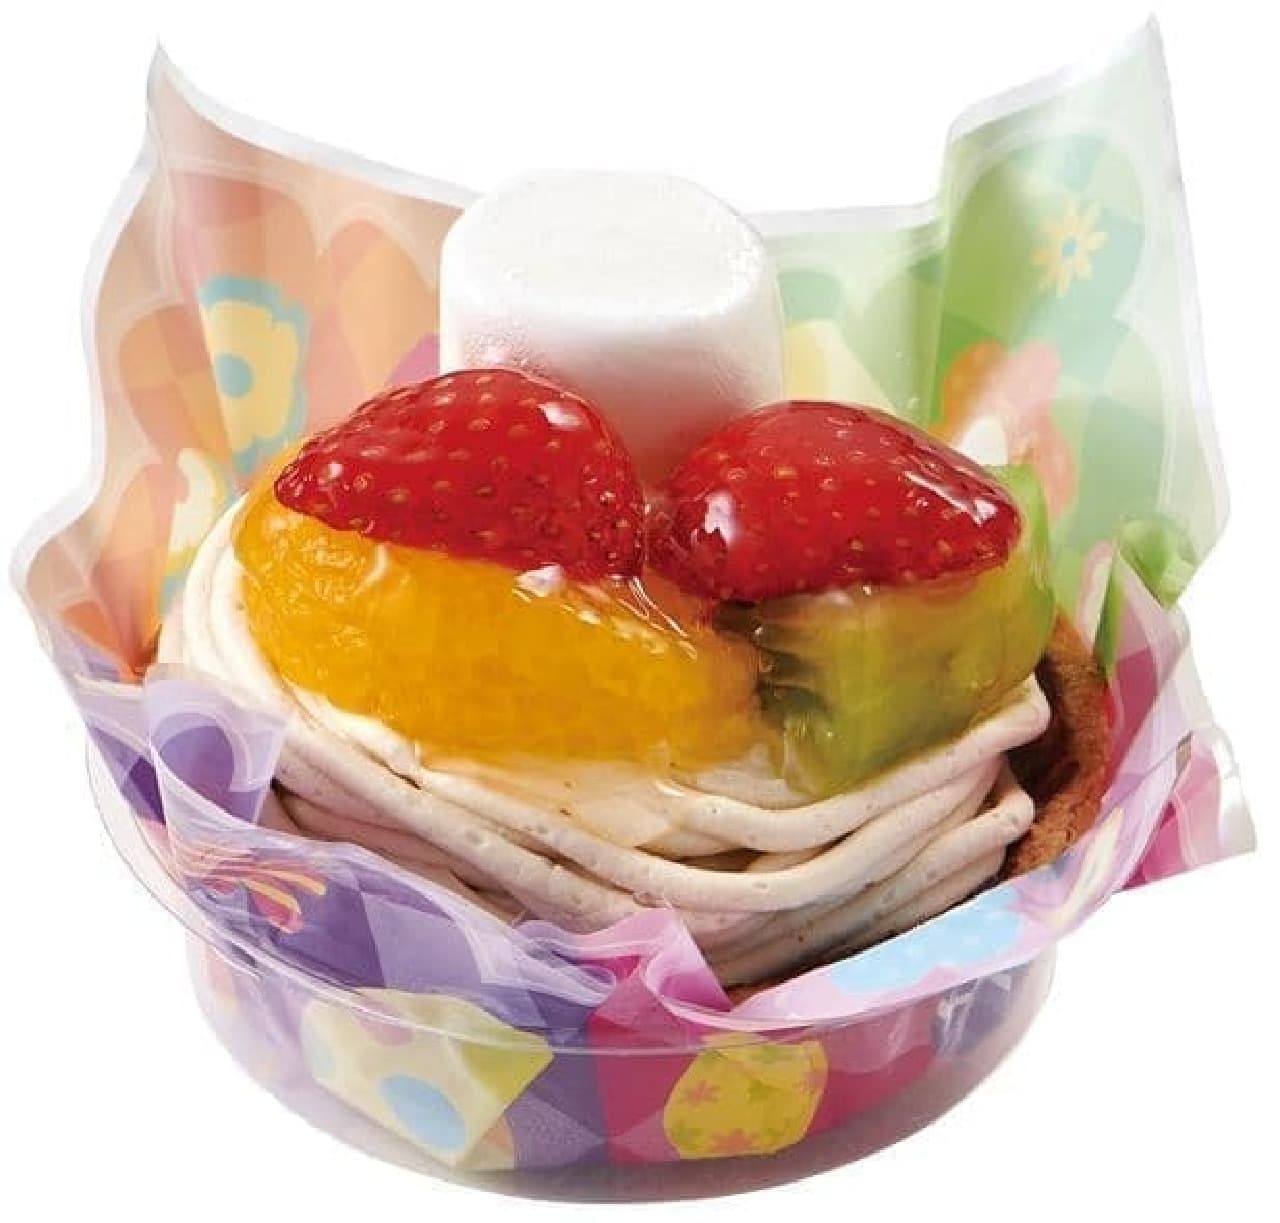 Fujiya pastry shop "Easter Fruit Tart"